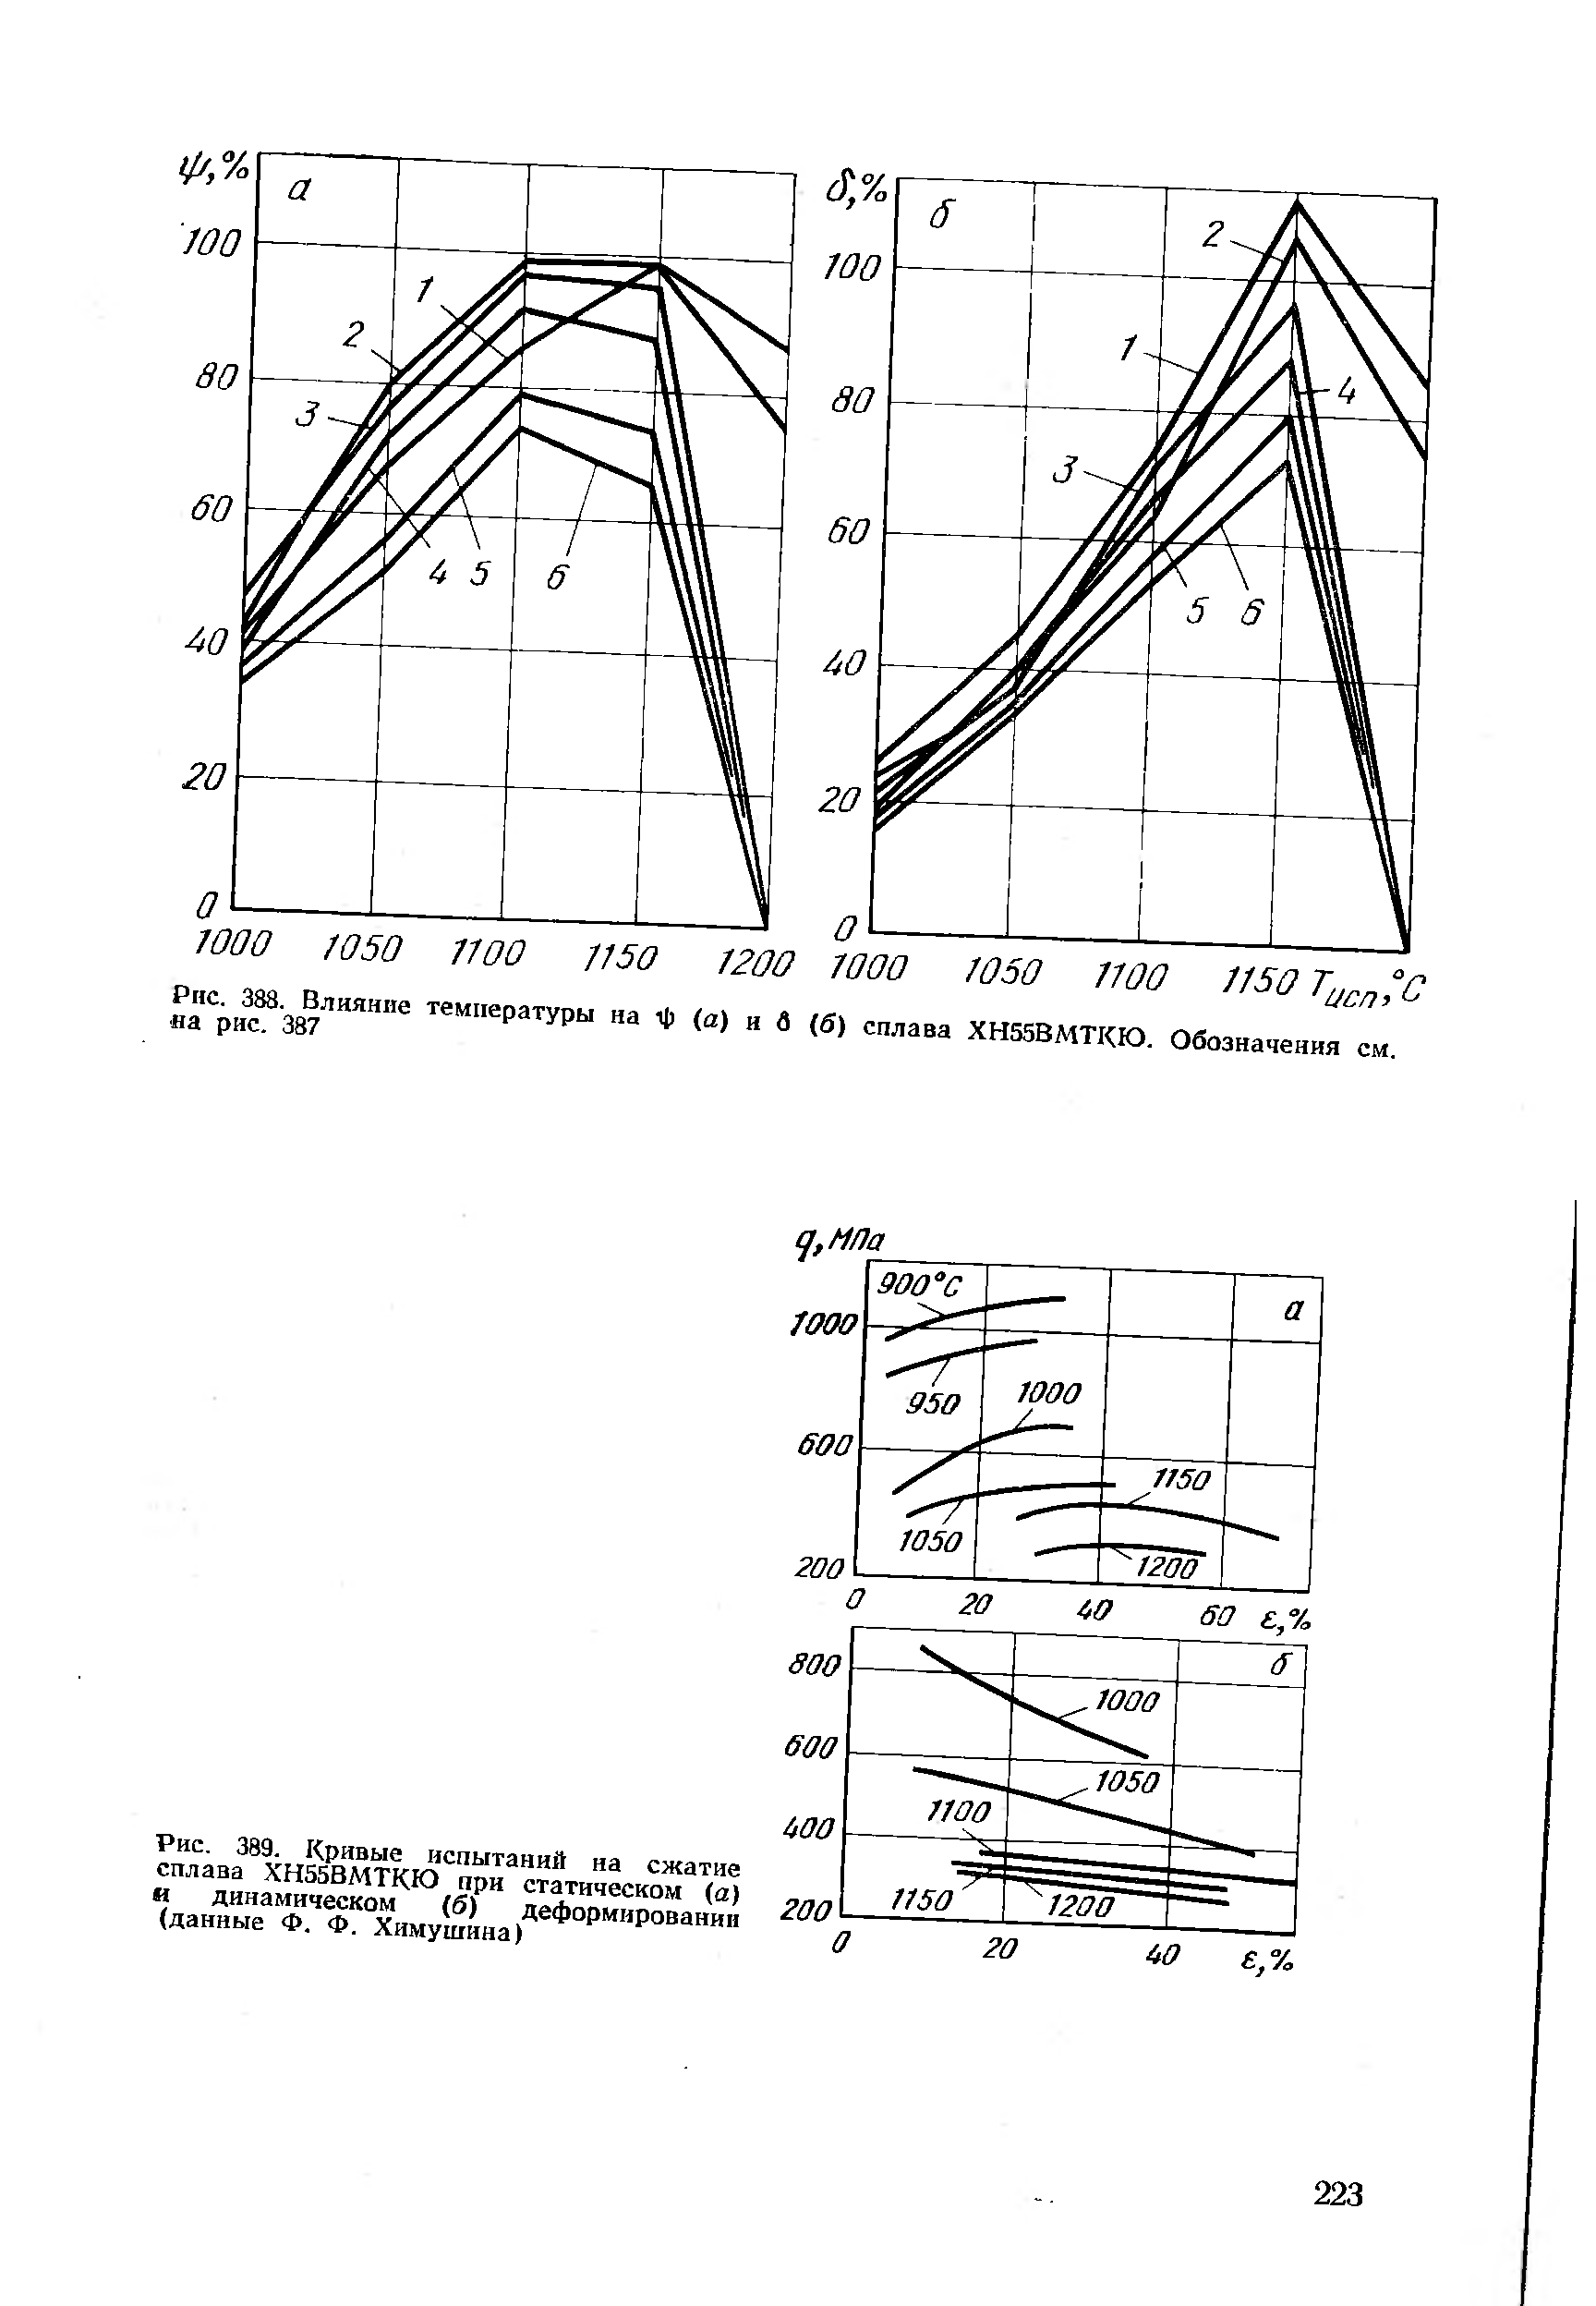 Рис. 389. Кривые испытаний на сжатие сплава ХН55ВМТКЮ при статическом (а) и динамическом (б) деформировании (данные Ф. Ф. Химушина)
